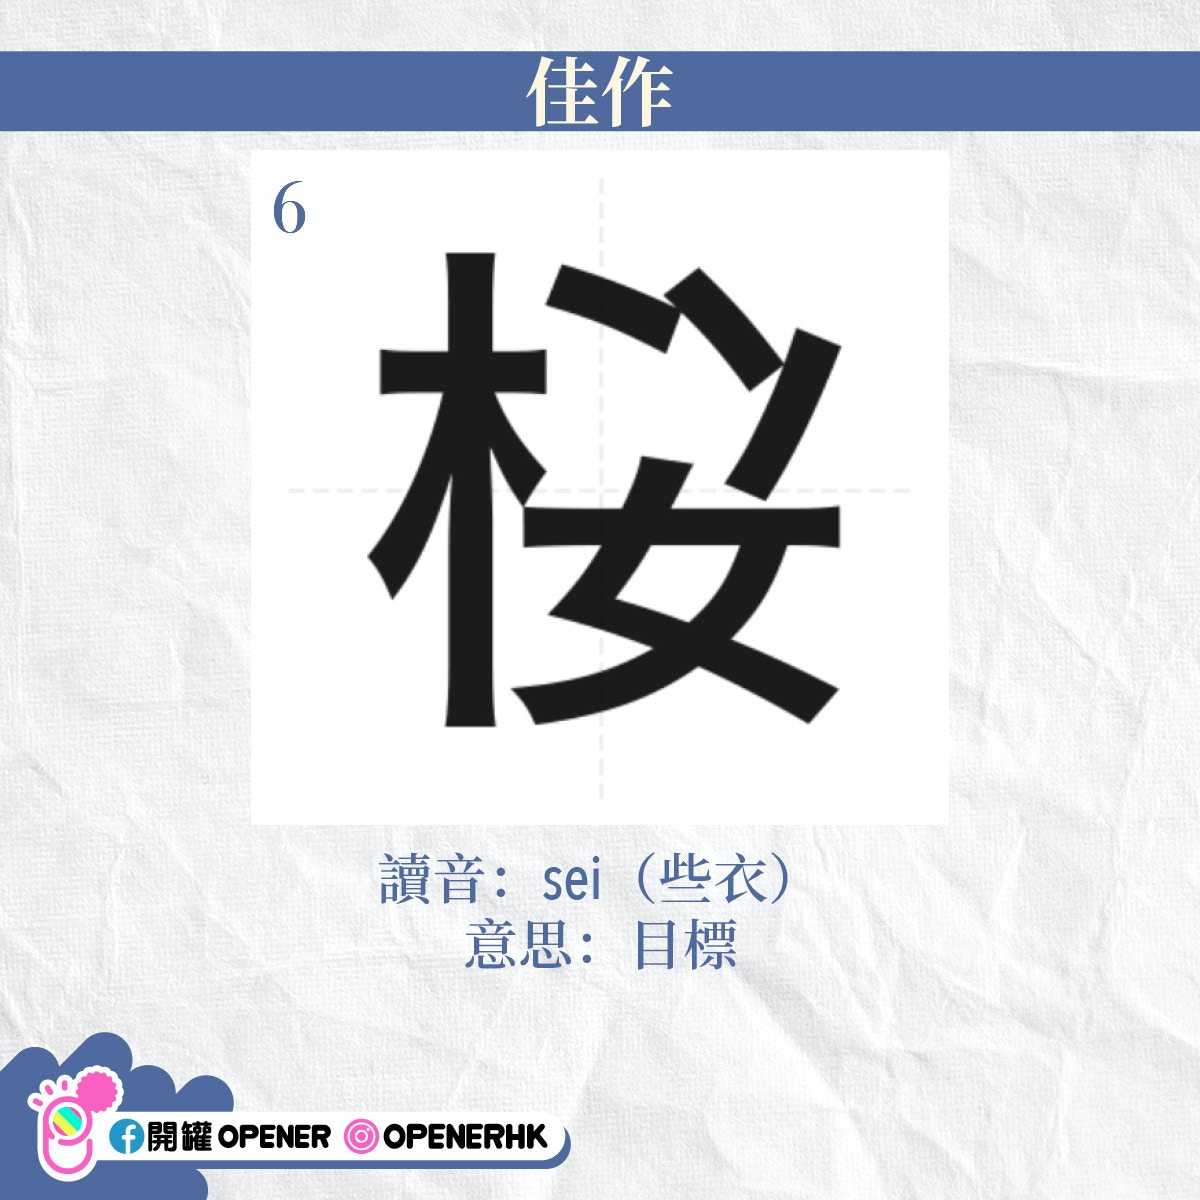 日本創意造字大賽 32個新字香港人也秒懂 会 Z 咩意思